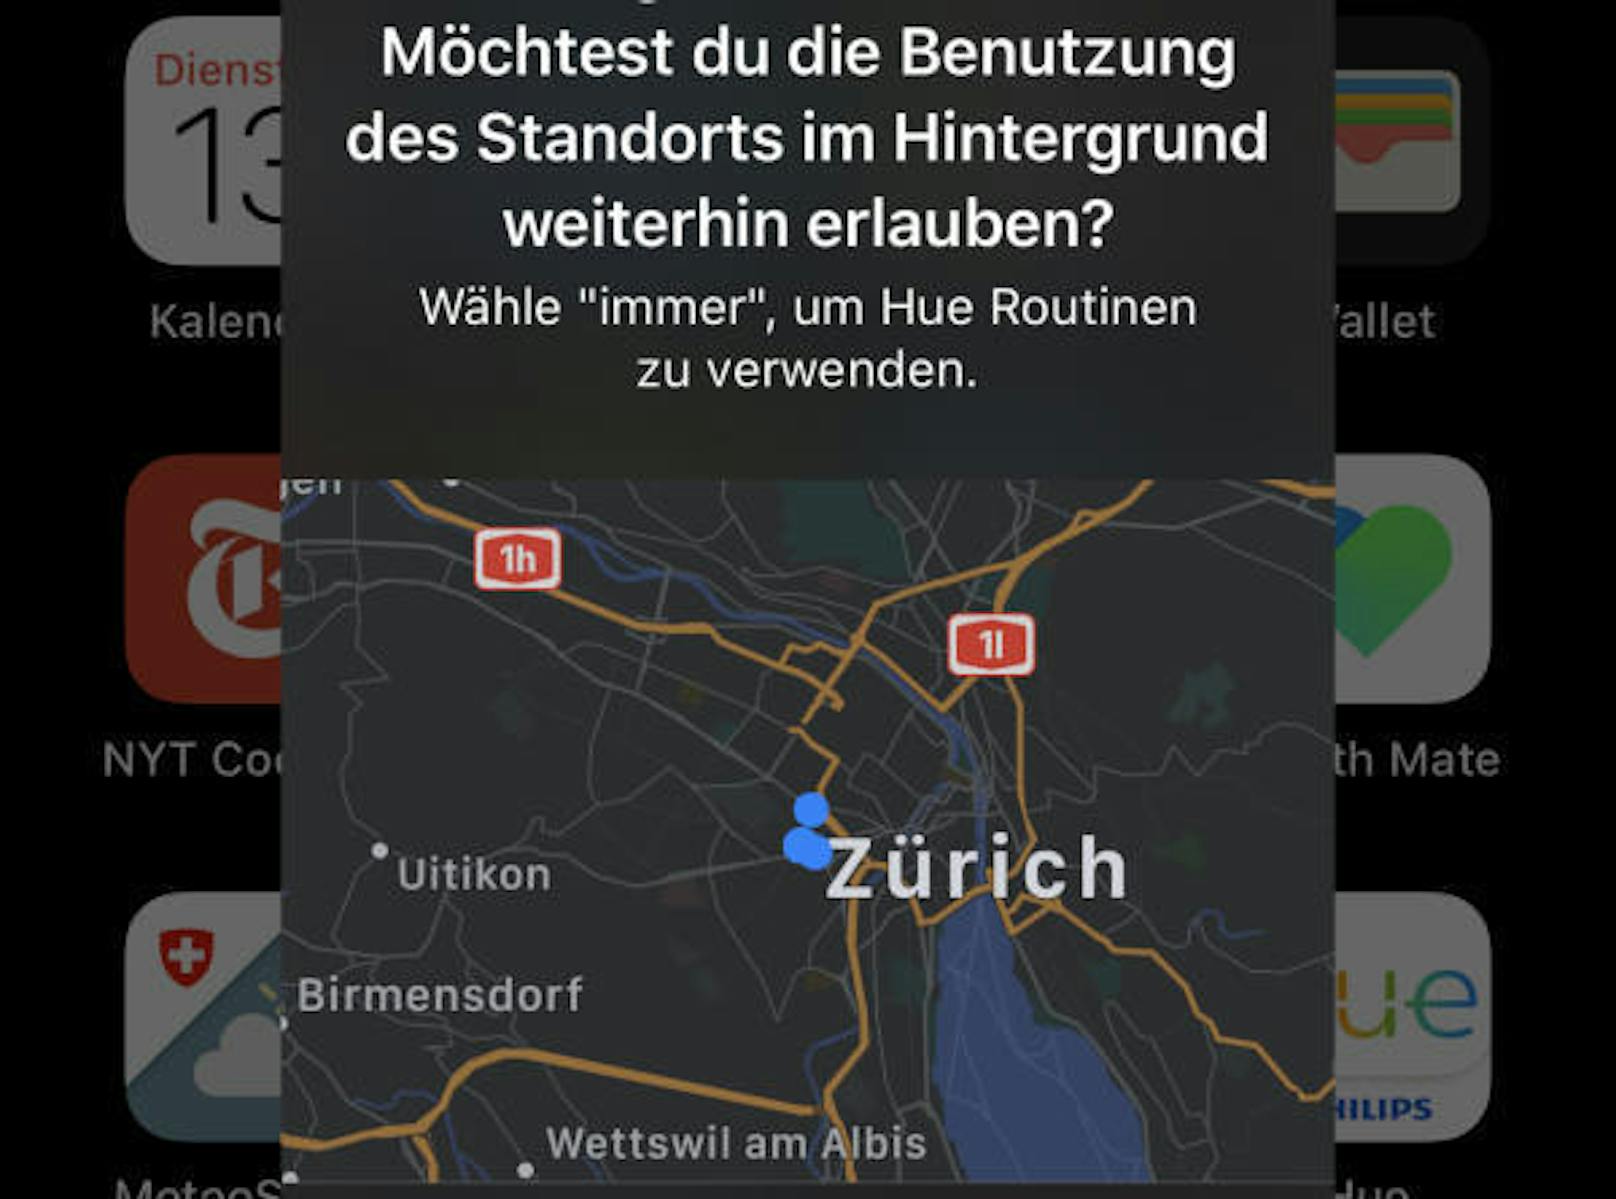 <b>Kleine Karte</b> mit großer Wirkung: Apps, die im Hintergrund den GPS-Standort nutzen, werden von iOS 13 an den Pranger gestellt. Nutzer erhalten diese Karte angezeigt und können dann direkt entscheiden, ob sie dem Vorgehen einen Riegel schieben wollen. Ein cleverer Schachzug, Apple.